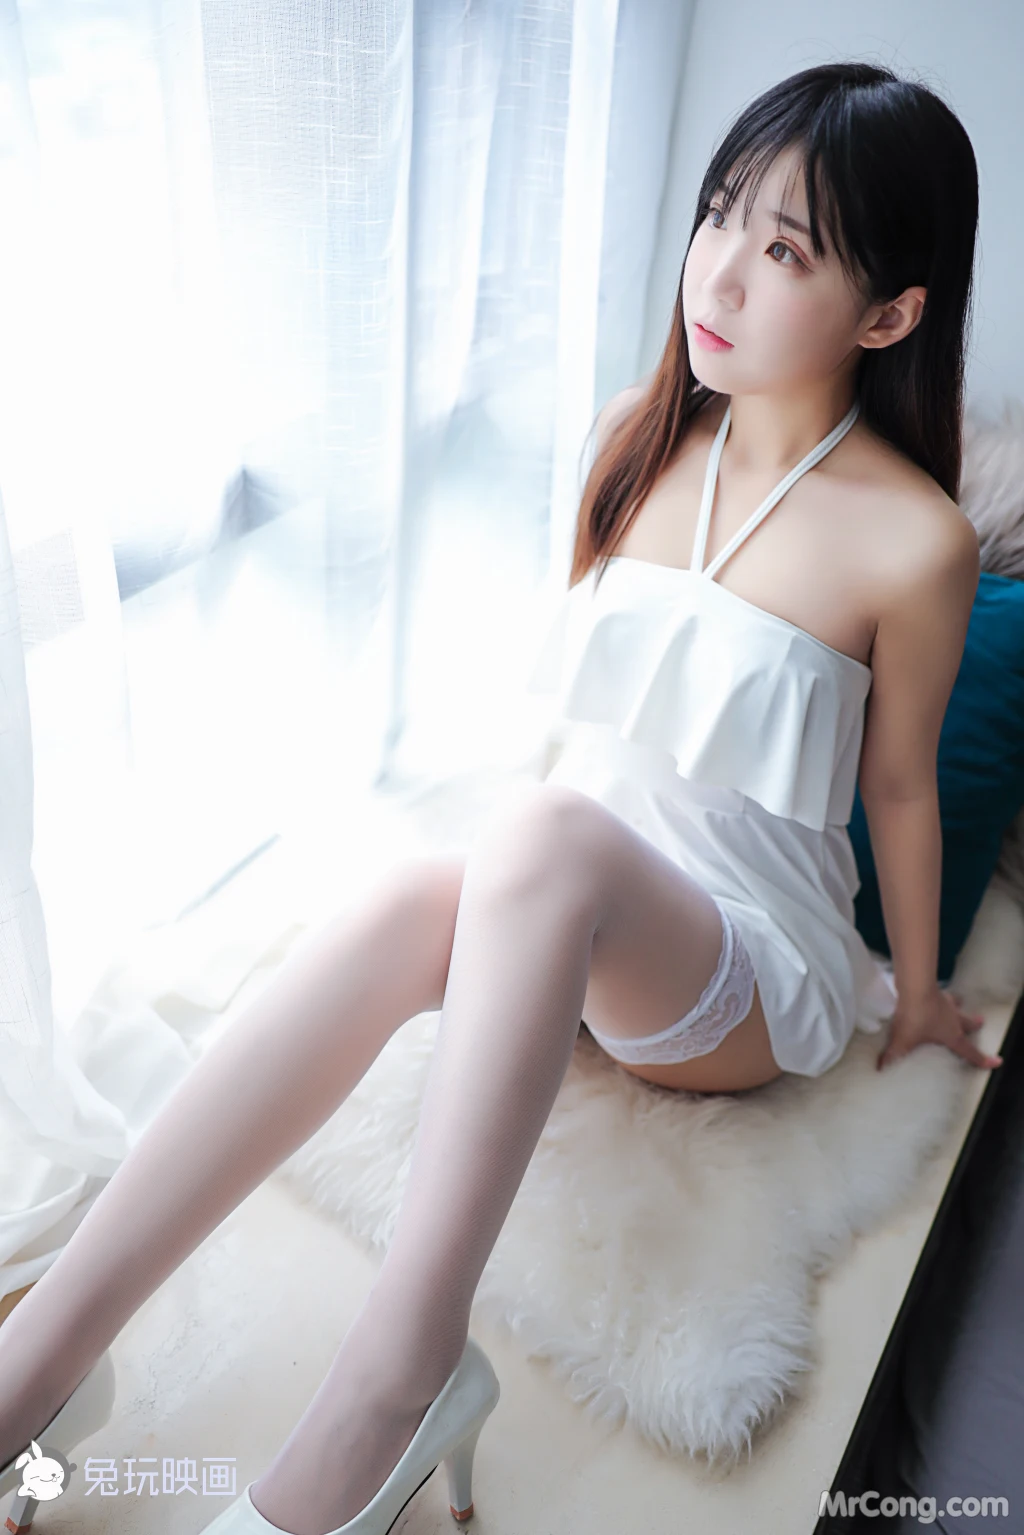 Cosplay@兔玩映画 Vol.036: 御子的白裙 (47 photos) photo 1-8